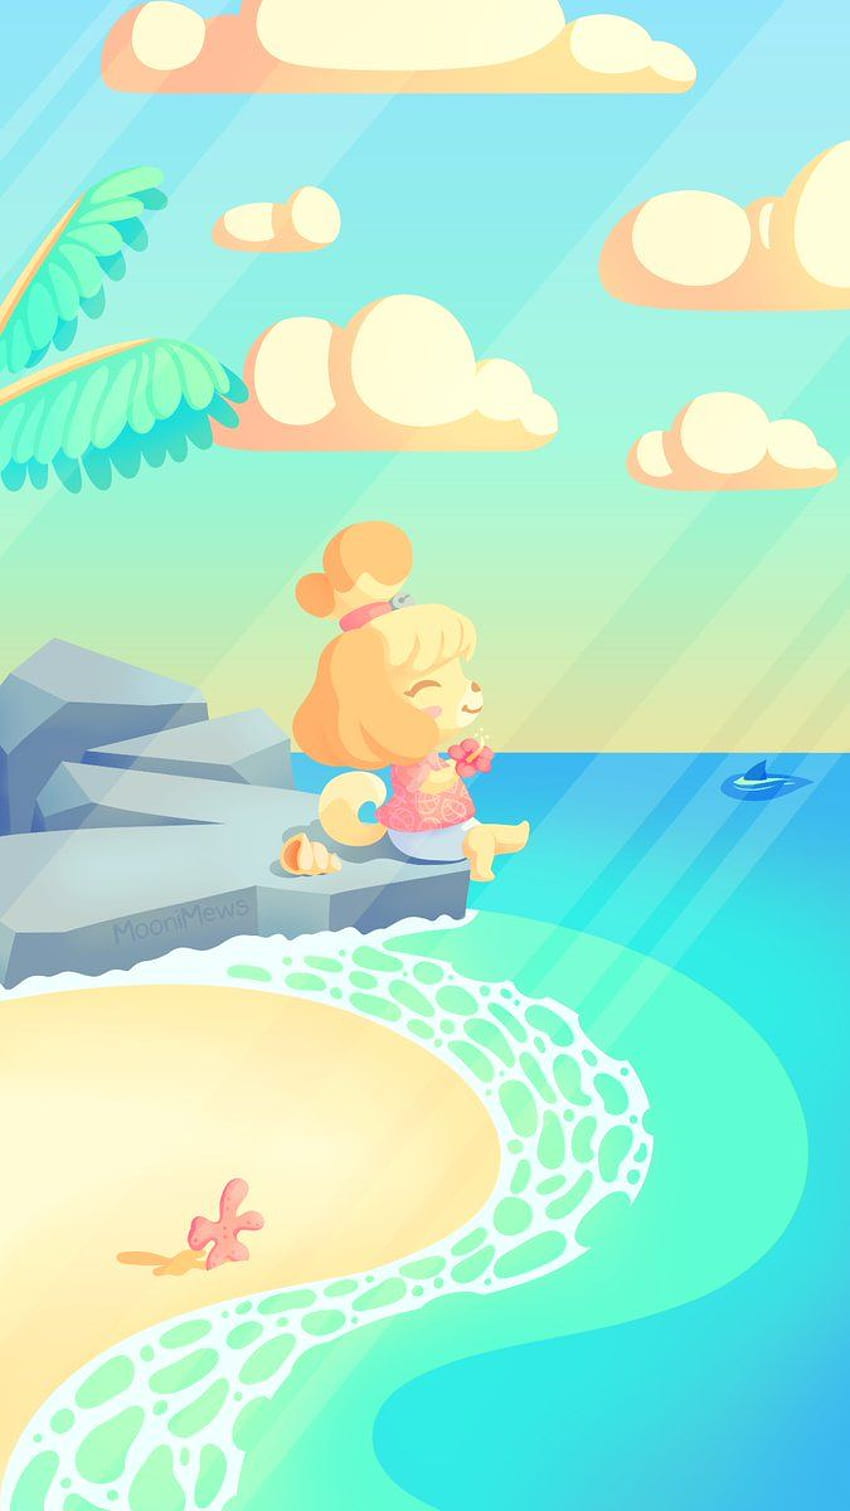 MooniMews. bIm — telefon Animal Crossing New Horizons, który zrobiłem, by dać Isabelle chwilę relaksu przed rozpoczęciem gry :) Tapeta na telefon HD